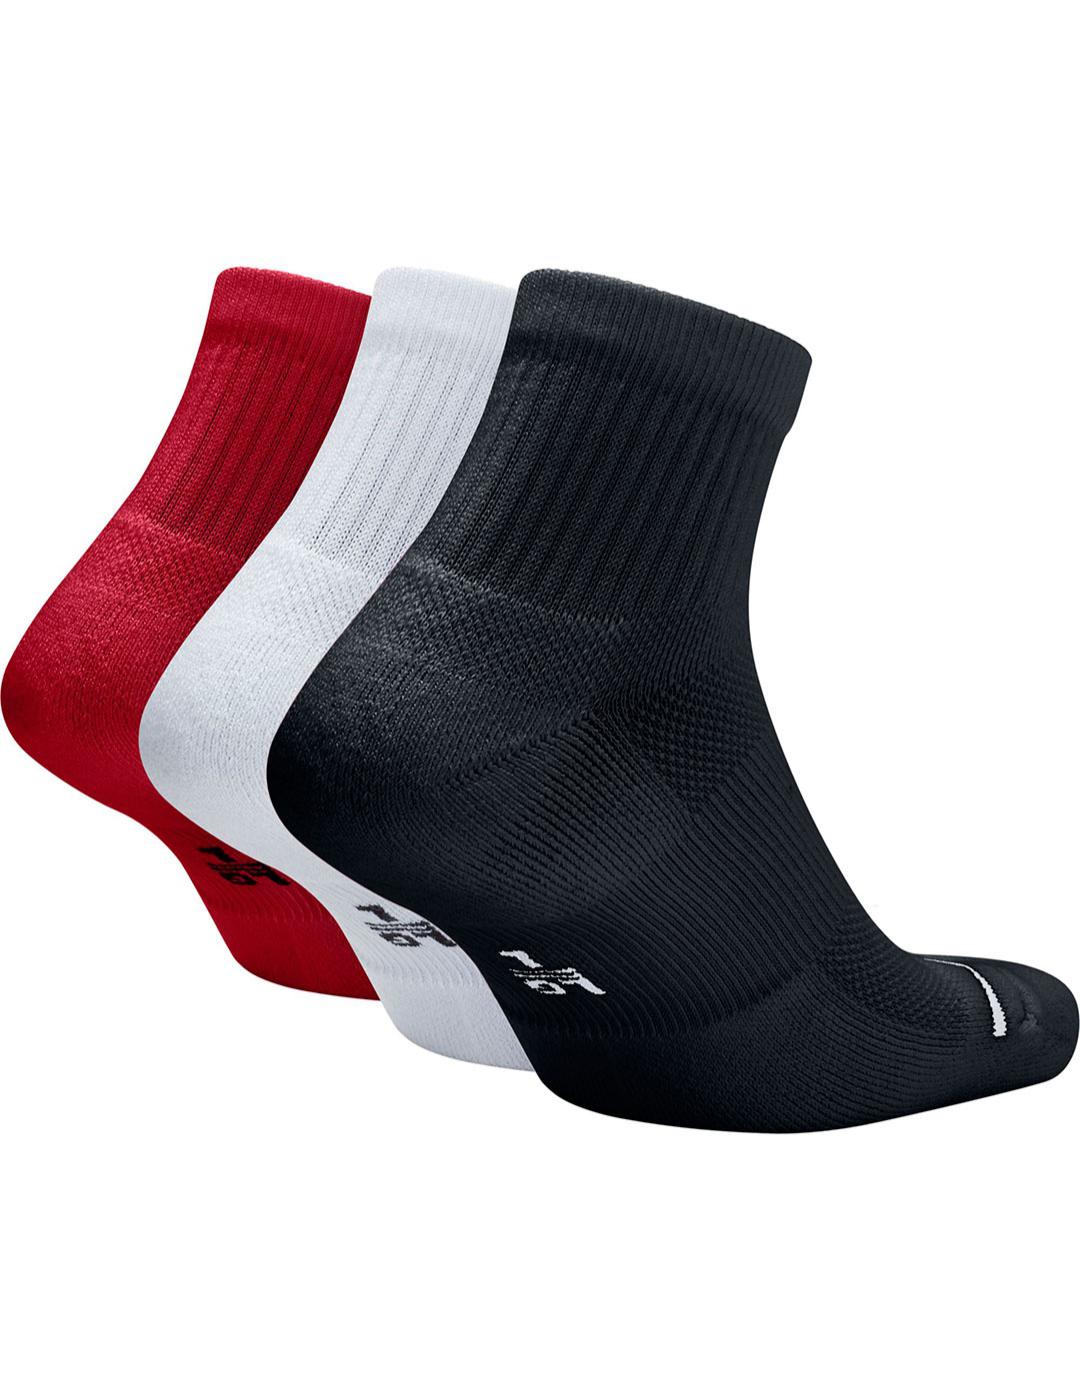 Calcetines Unisex Nike Jordan Evd Max 3 Colores